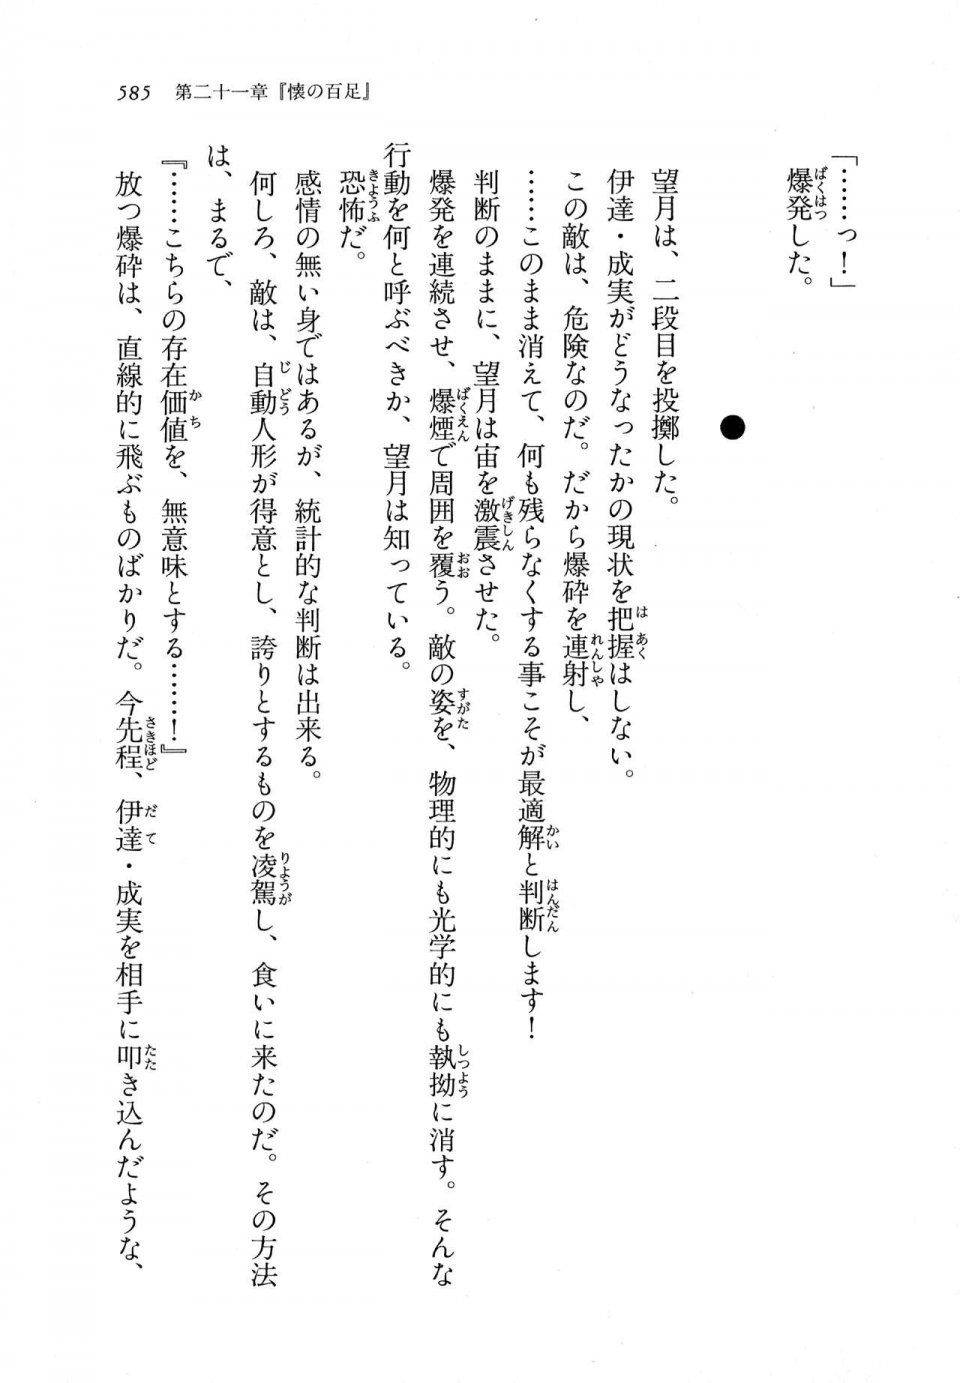 Kyoukai Senjou no Horizon LN Vol 11(5A) - Photo #585